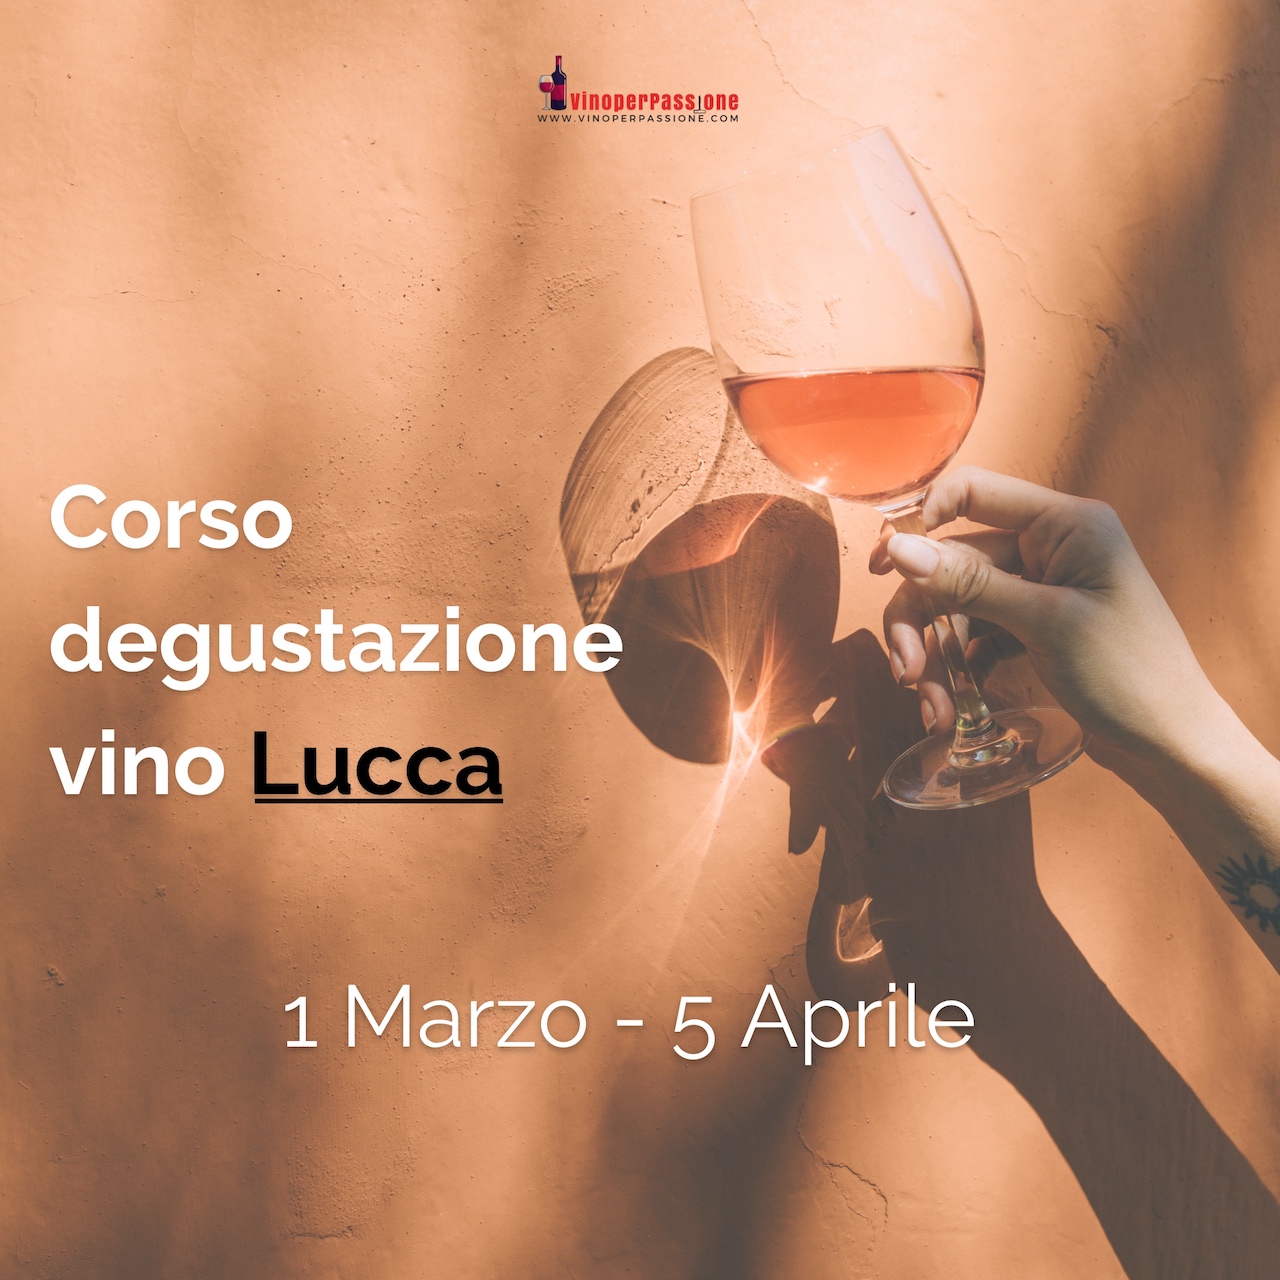 Corso degustazione vino Lucca